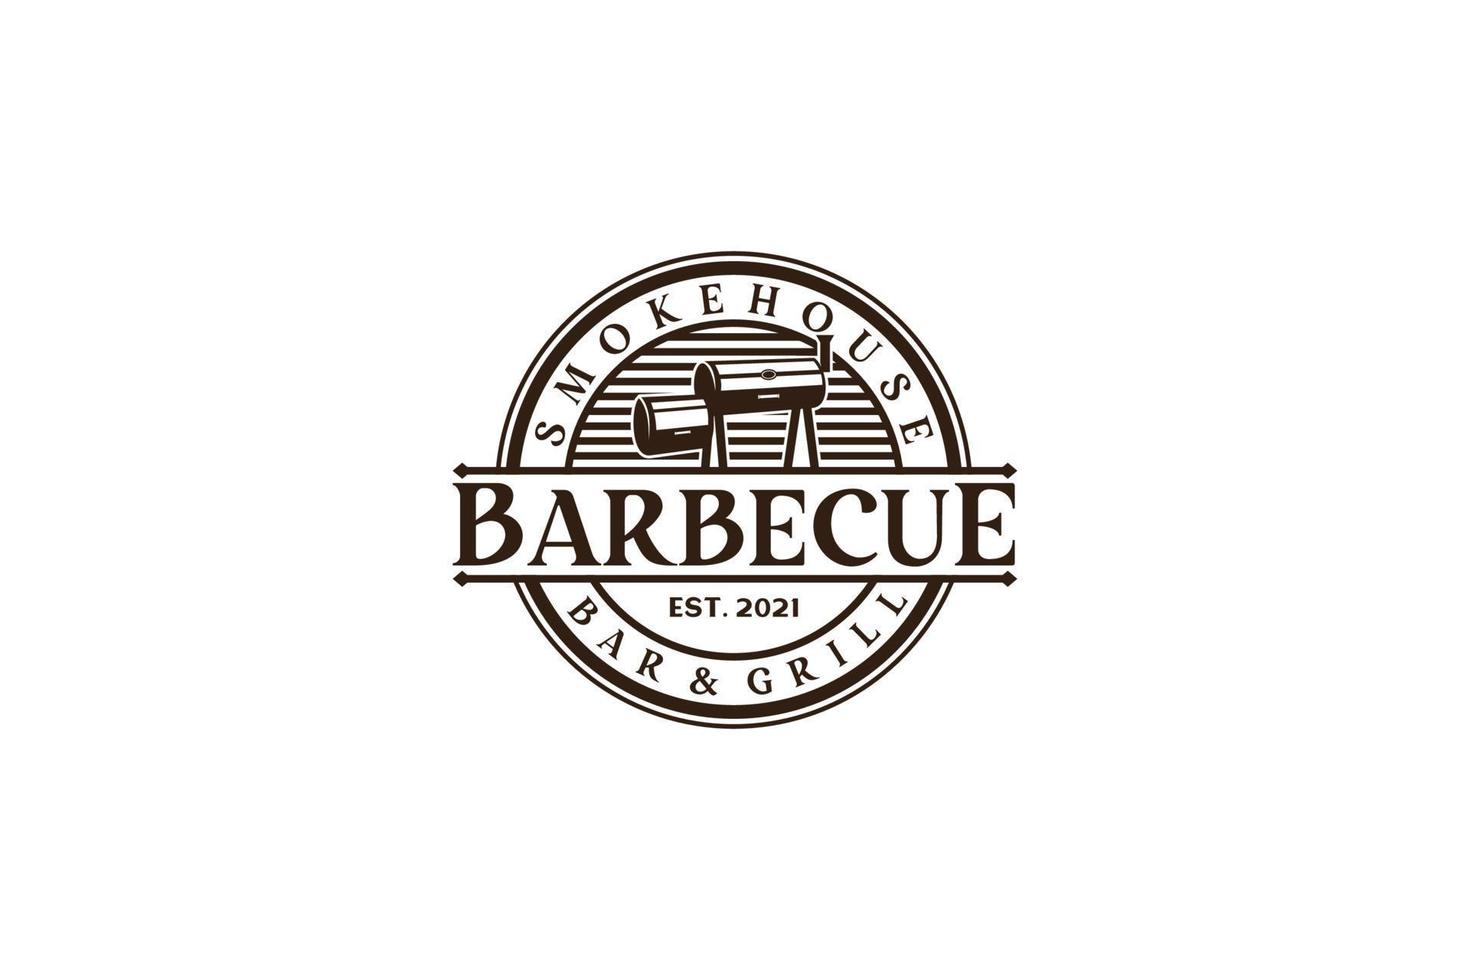 vintage retro rustieke bbq grill, barbecue, barbecue label stempel logo ontwerp vector